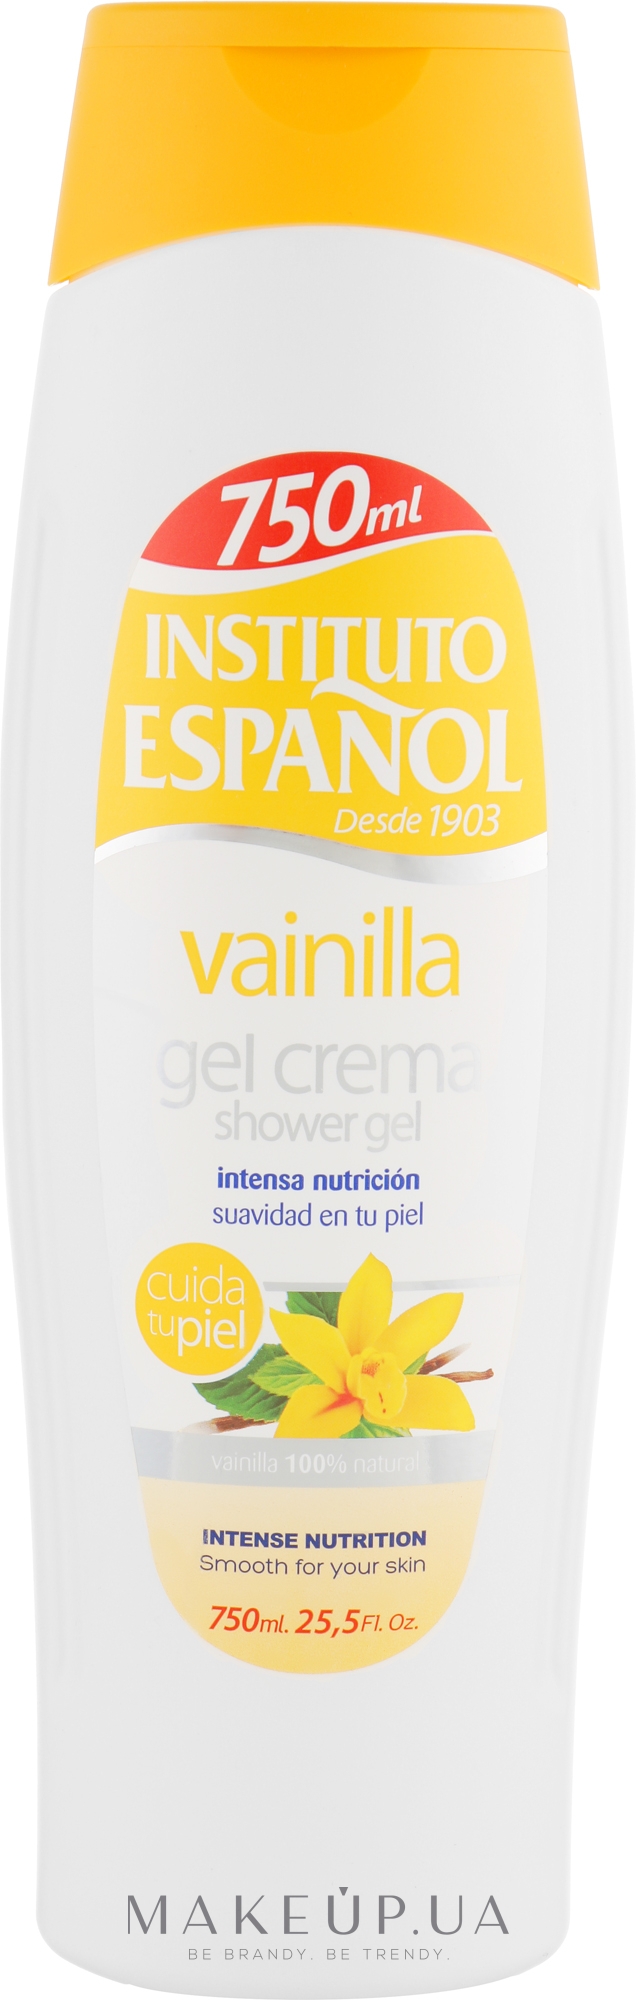 Крем-гель для душа "Ваниль" - Instituto Espanol Vanilia Shower Gel — фото 750ml